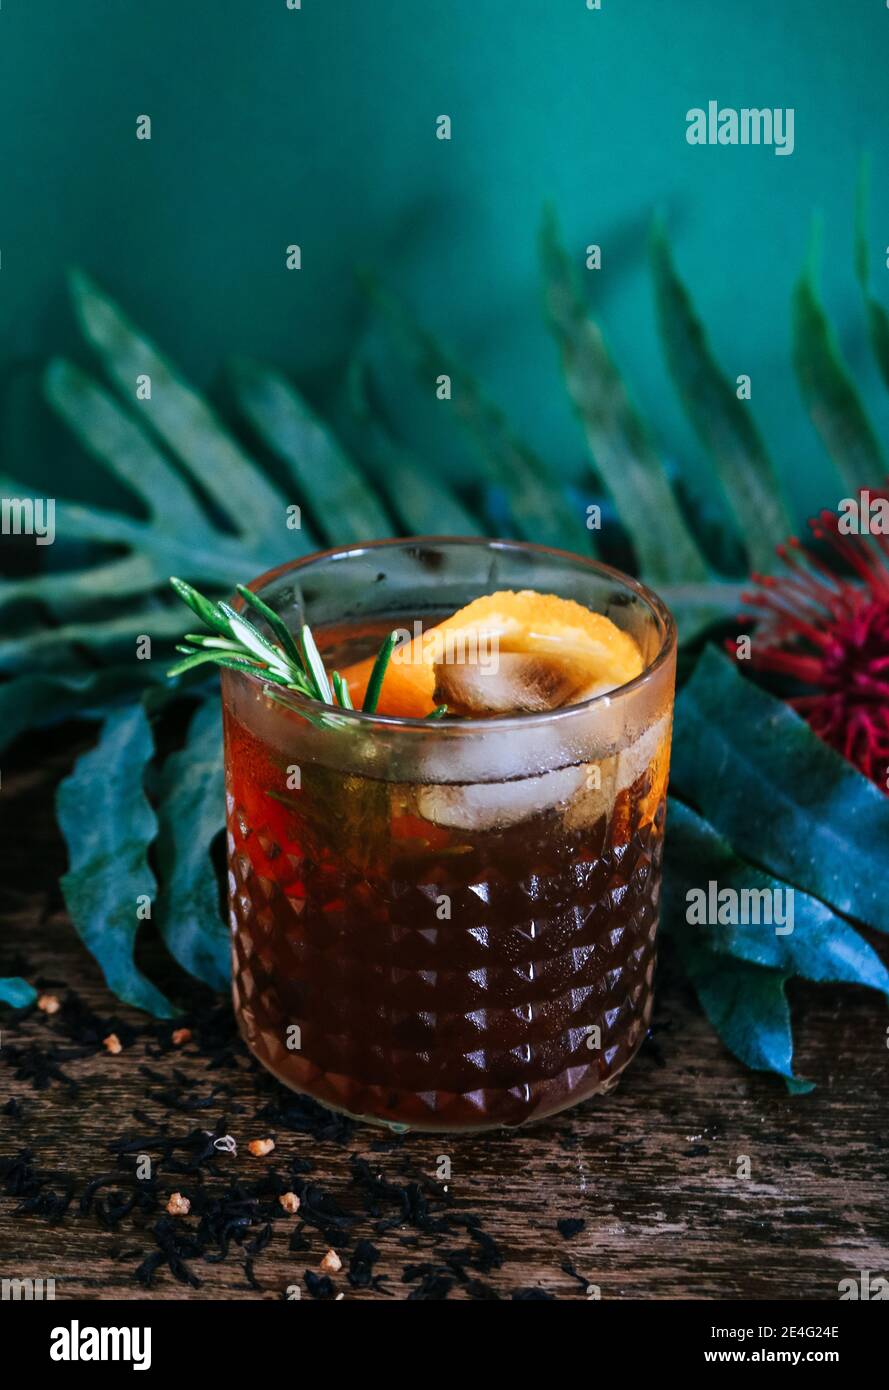 Un cocktail de rhum ou de whisky à l'ancienne sur fond vert foncé tropical et botanique Banque D'Images